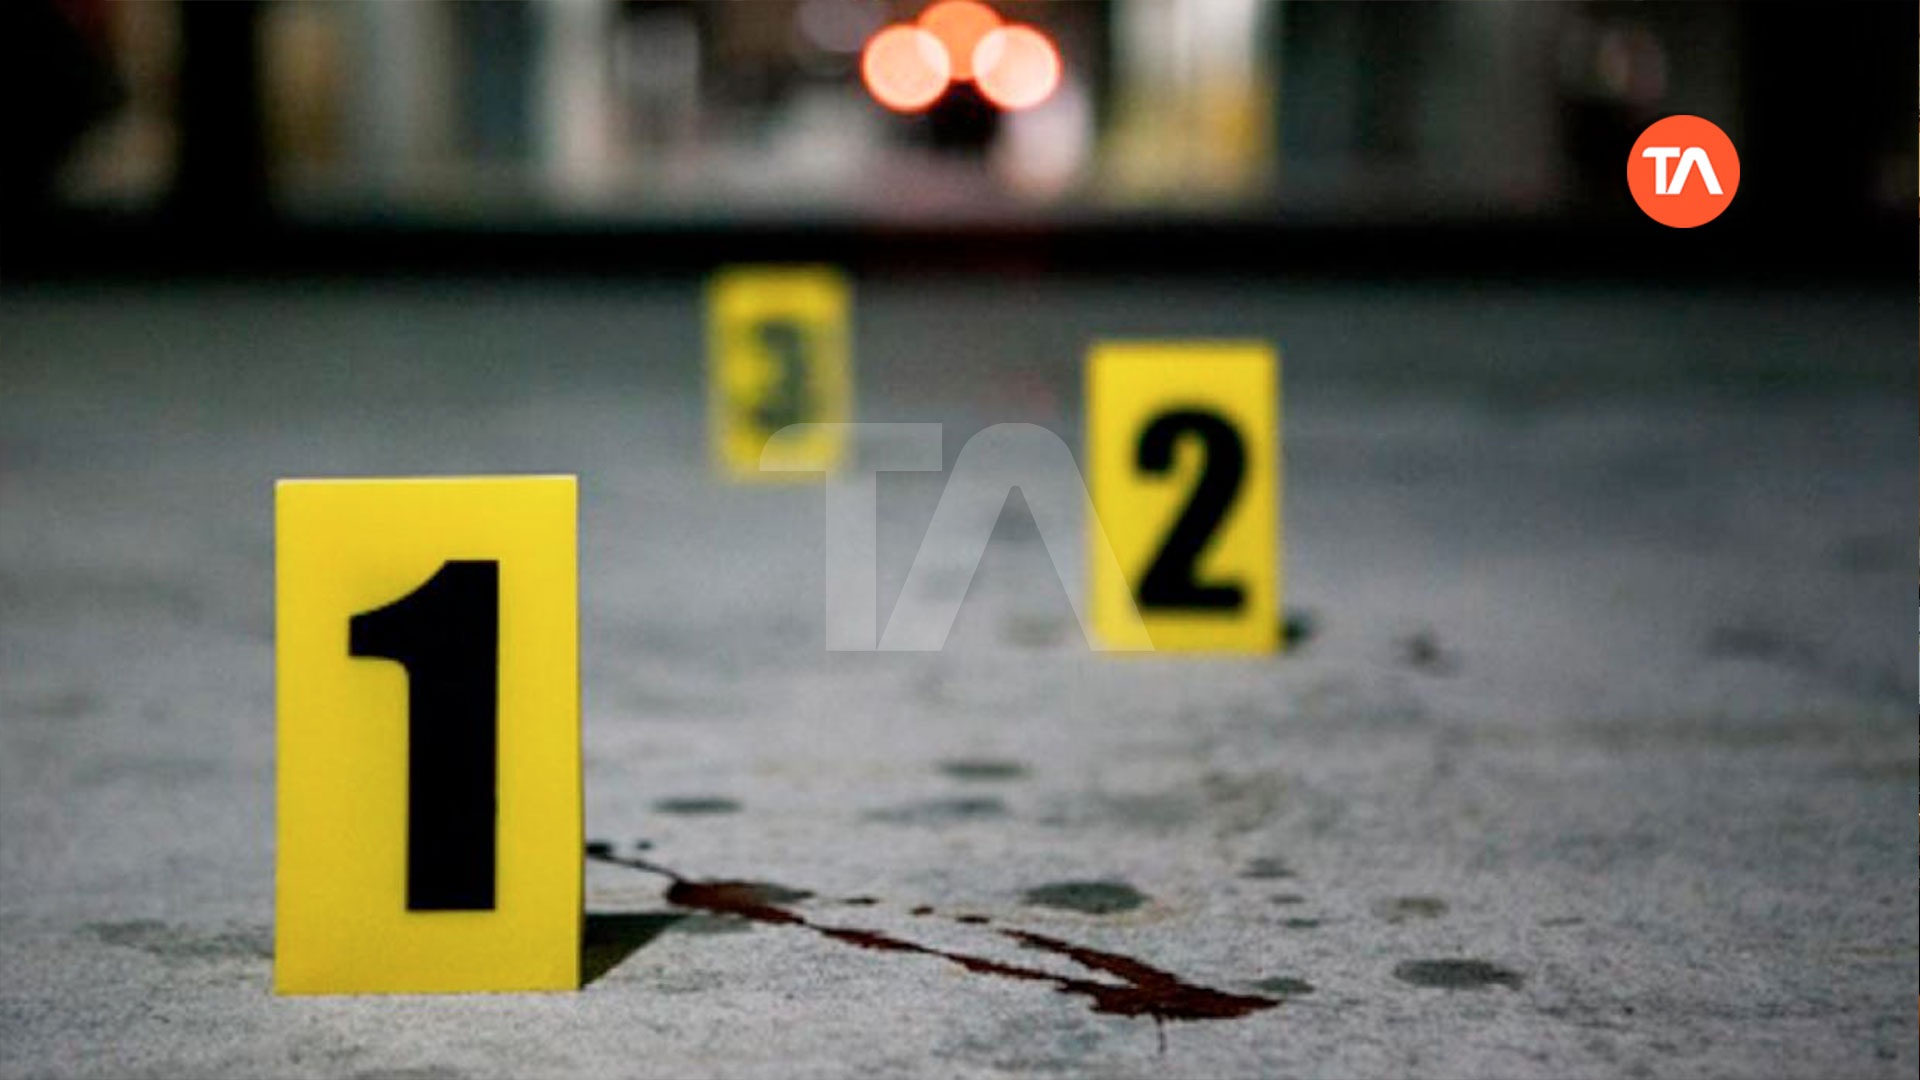 22 muertes violentas en Guayaquil y Durán este fin de semana